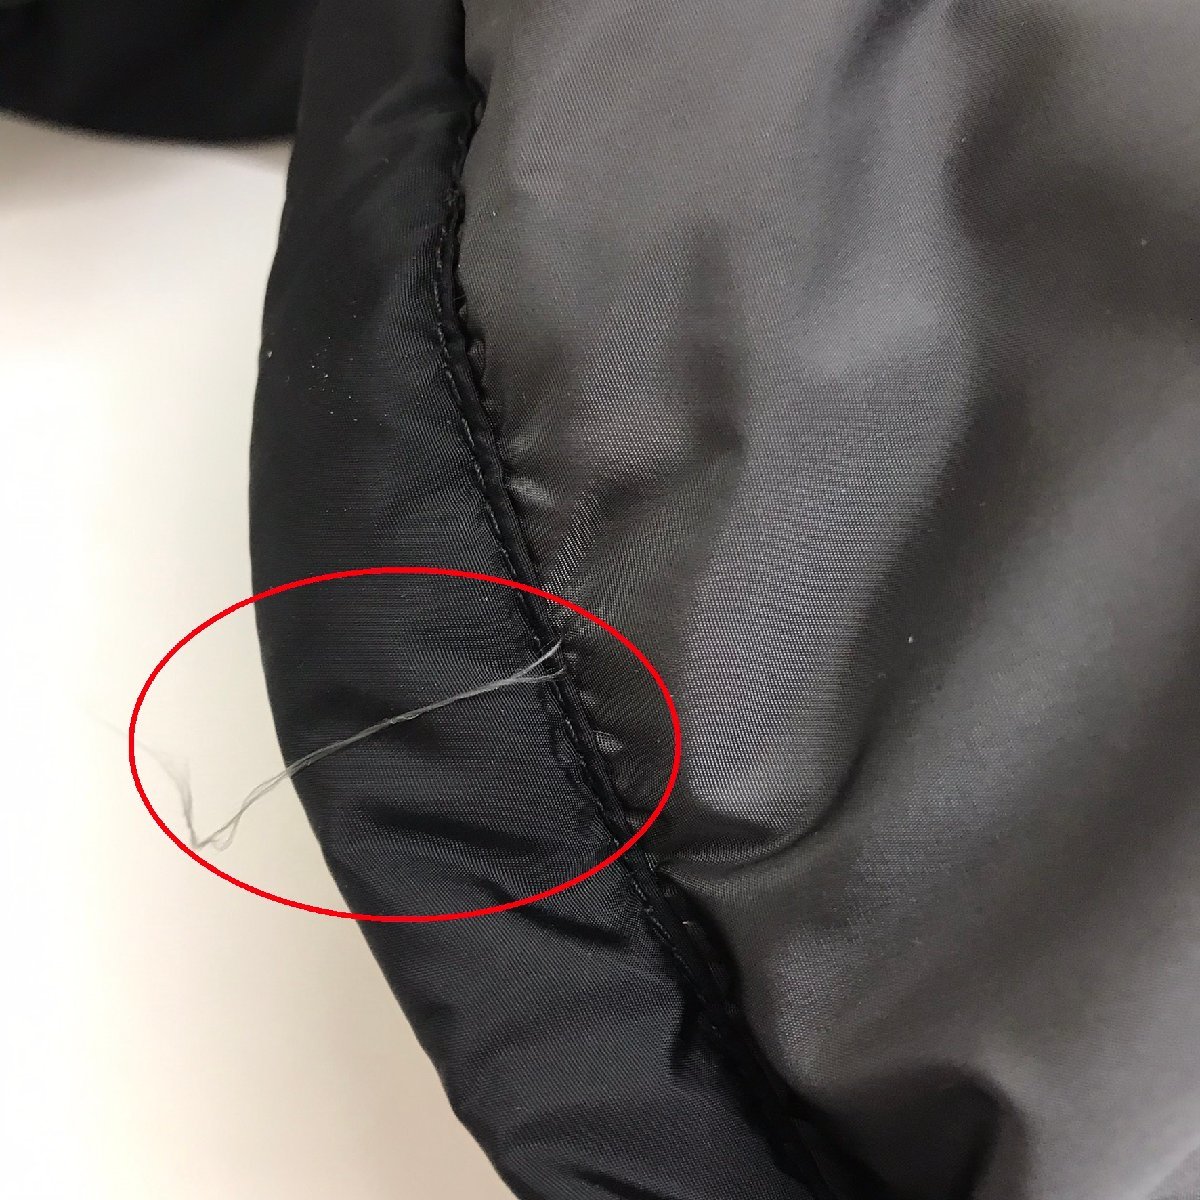 中古品 衣類 プラダ PRADA ダウンジャケット ハーフコート 黒 ブラック SGV407 冬用 表記サイズなし 質屋出品_糸ほつれがあります